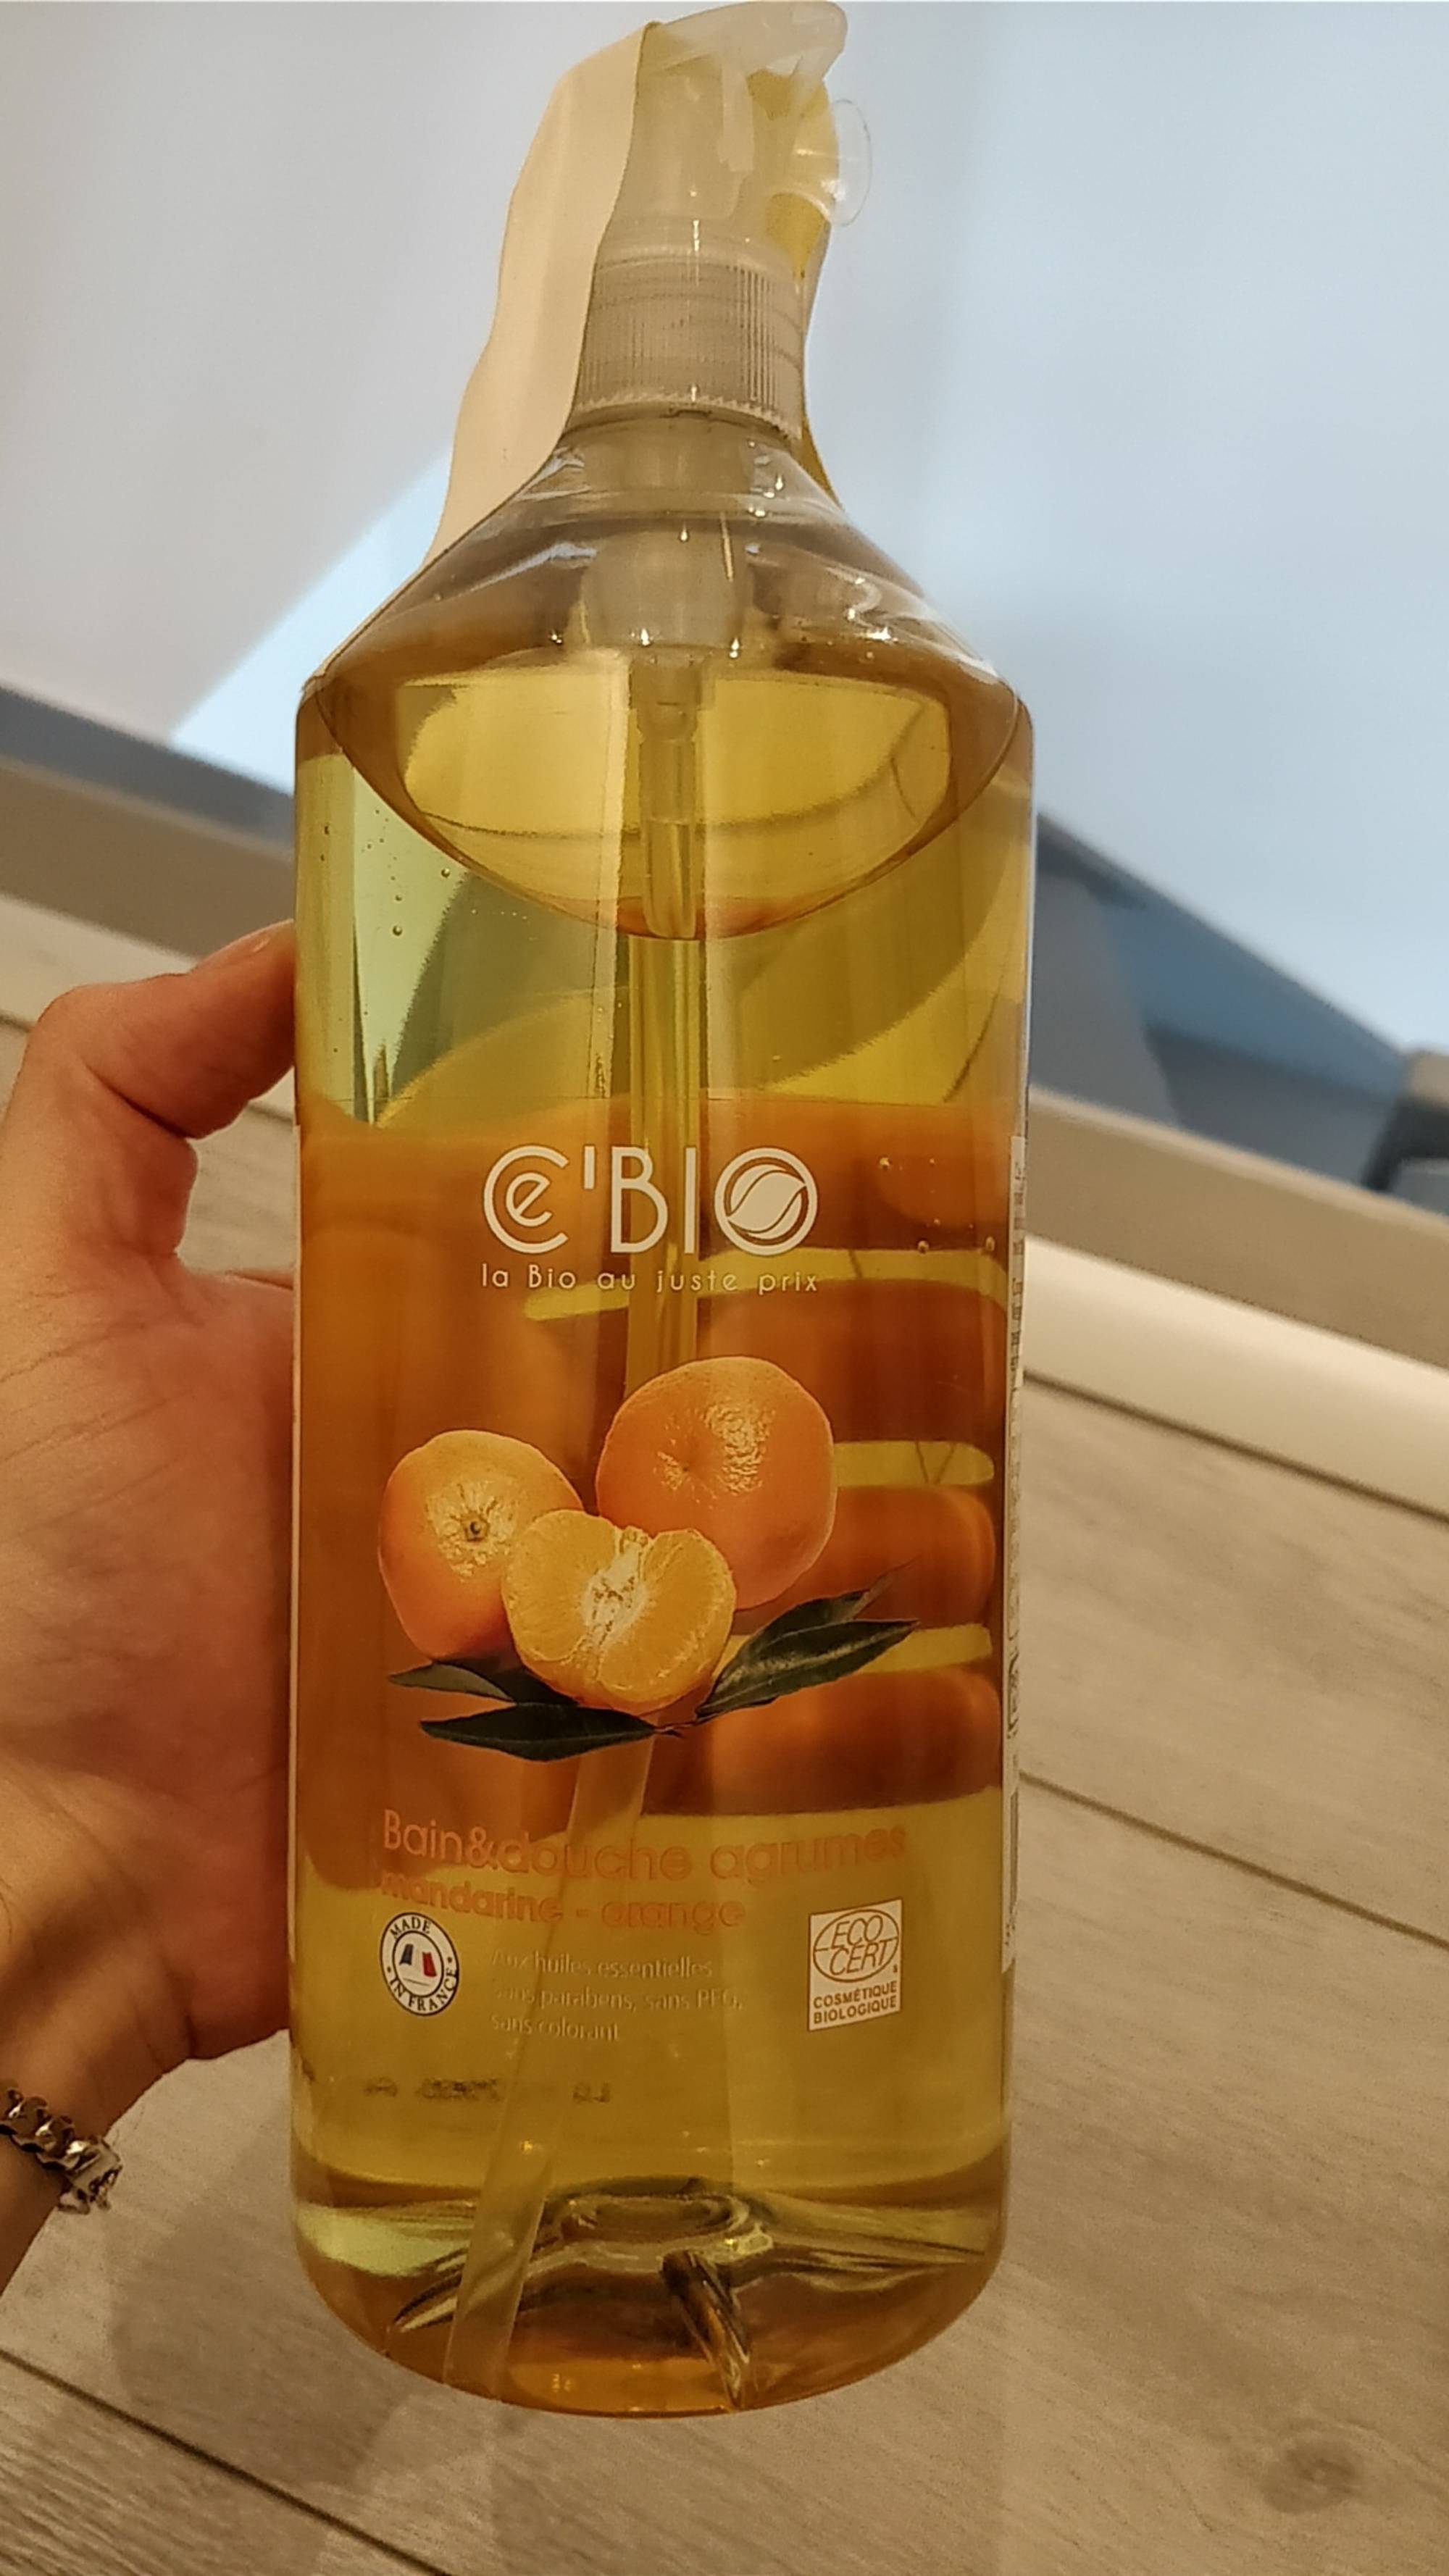 CE'BIO - Bain & douche agrumes - Mandarine et orange